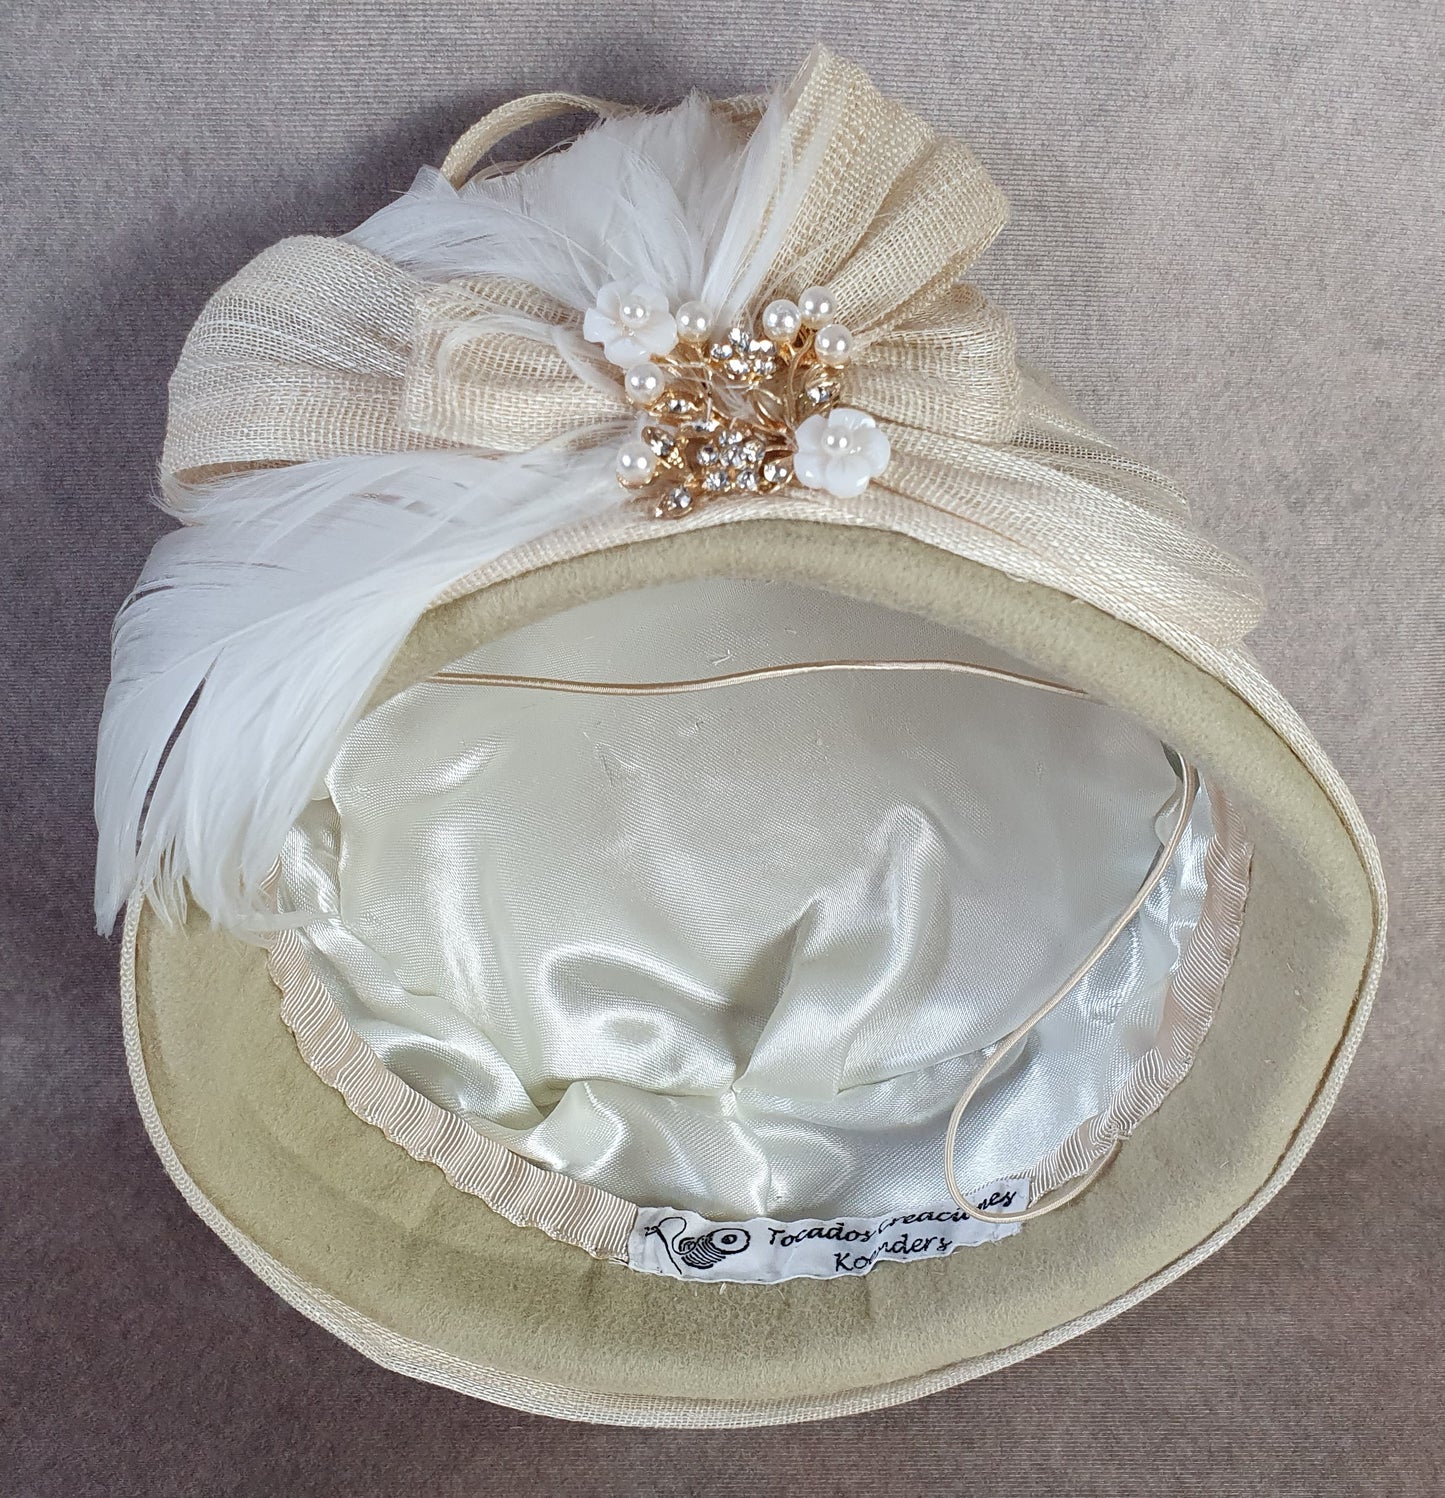 Tocado hecho a mano de fieltro beige con plumas de cisne y seda de abacá, elegante sombrero de mujer, sombrero pillbox, ocasiones especiales